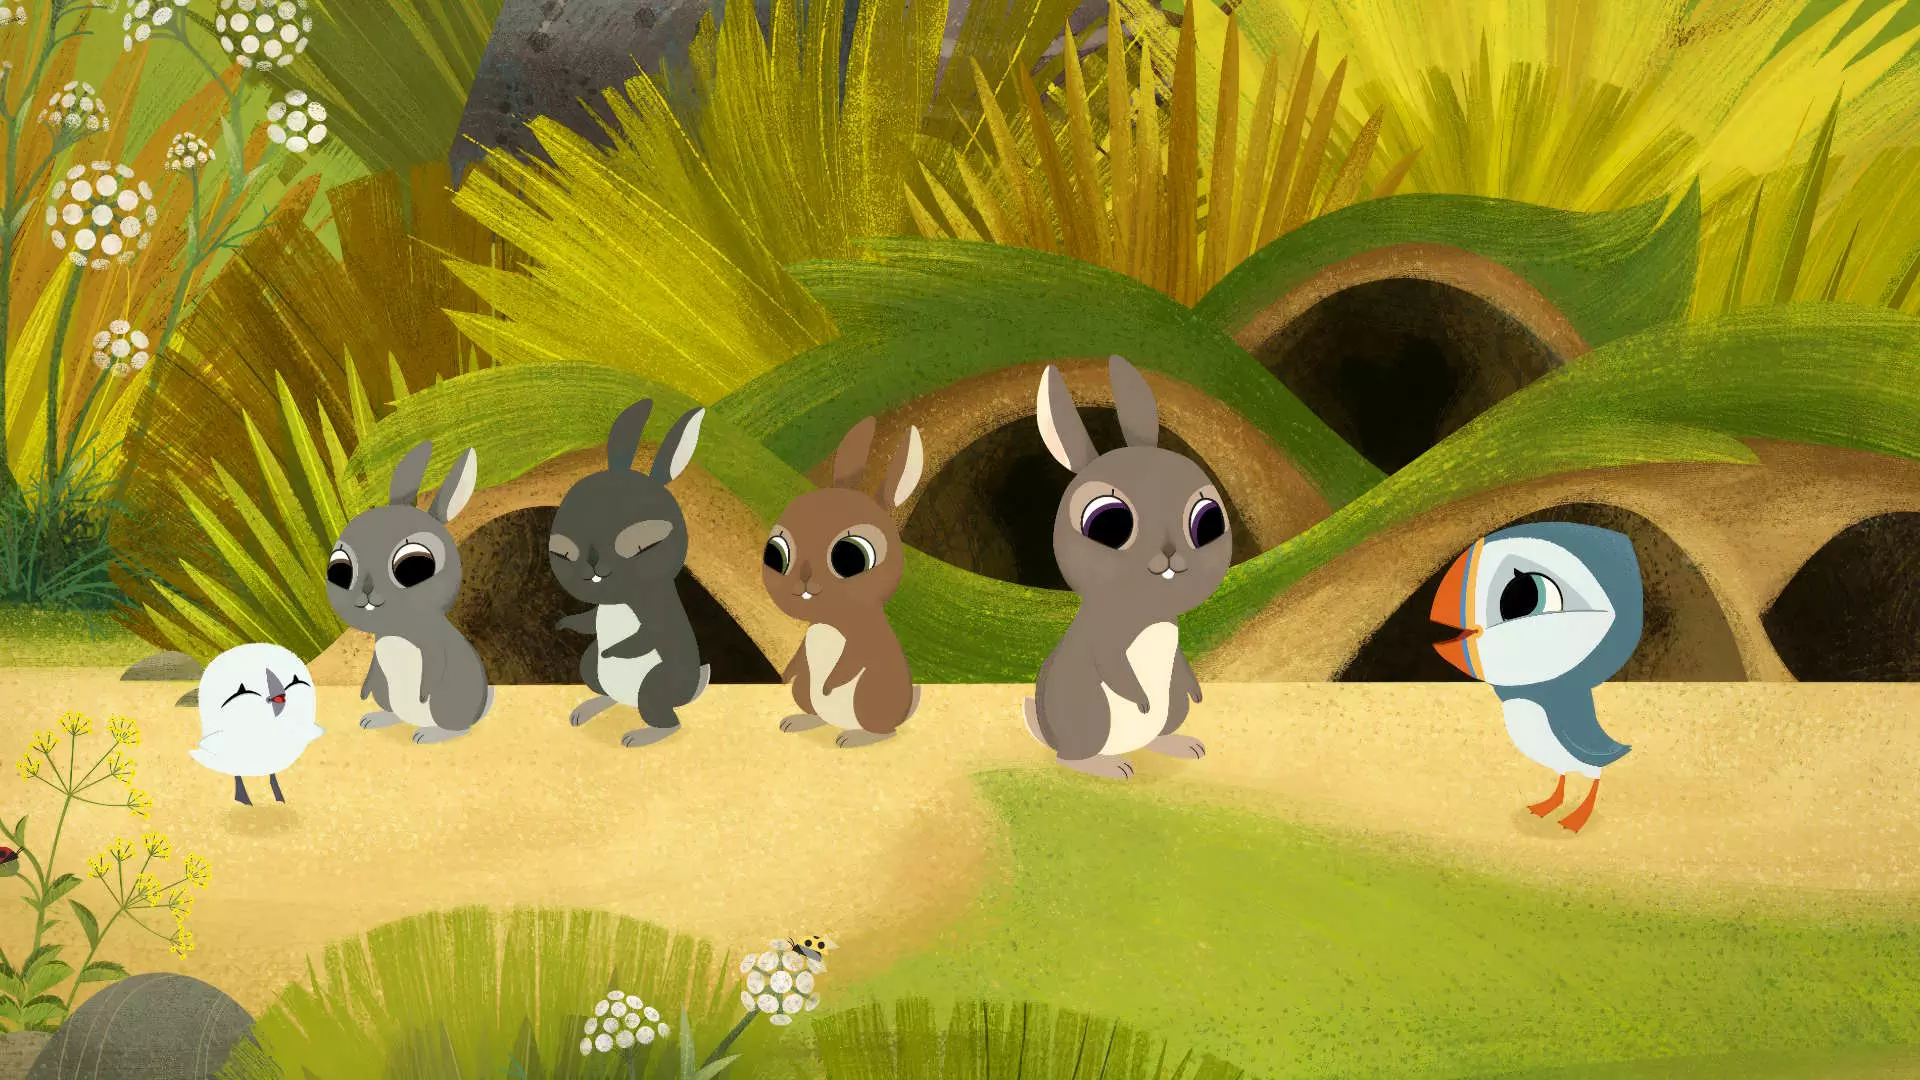 Animasjonsbilde. Fire kaniner i ulike varianter av grå og brun står sammen med en liten hvit fugl, og en blå-hvit lundefugl. I bakgrunnen ser vi kaninhi og grønne strå og planter.